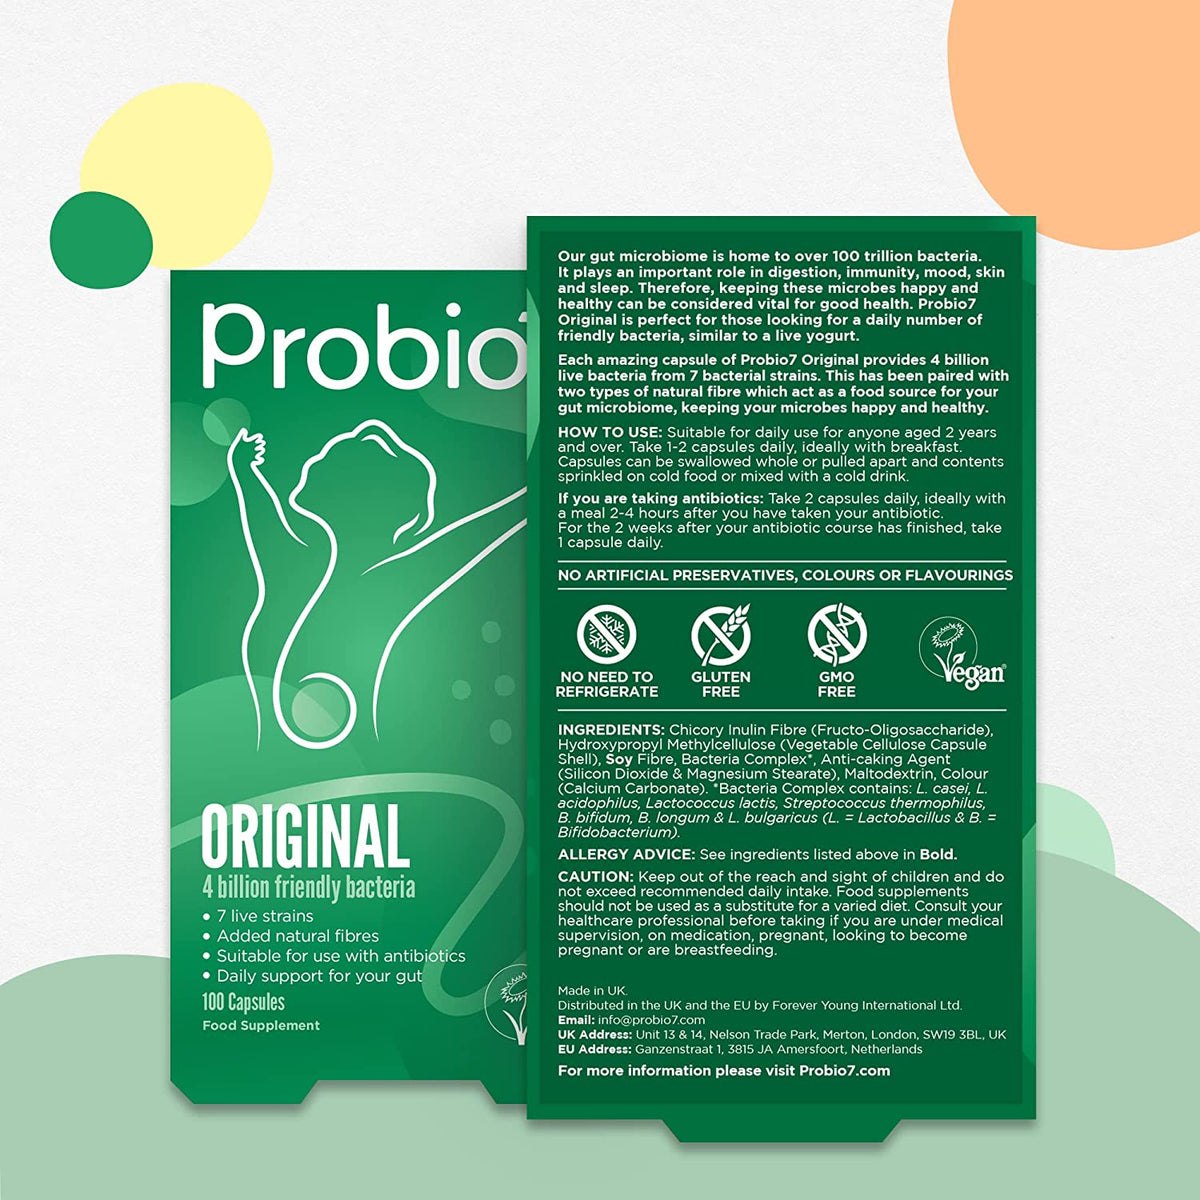 Probio7 Original Probiotics 4 Billion 7 Strains Vegan 100 Capsules